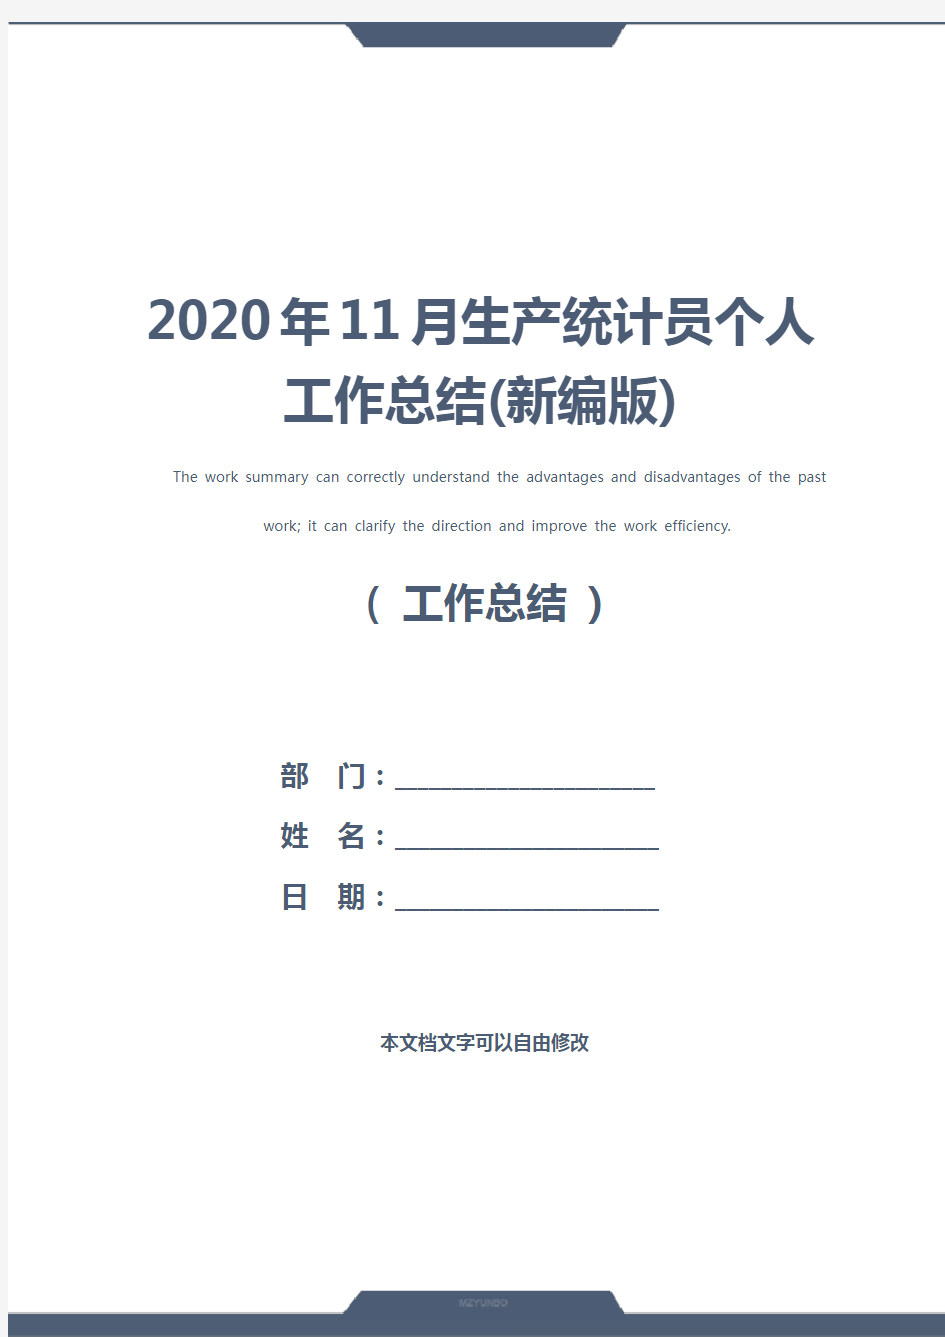 2020年11月生产统计员个人工作总结(新编版)